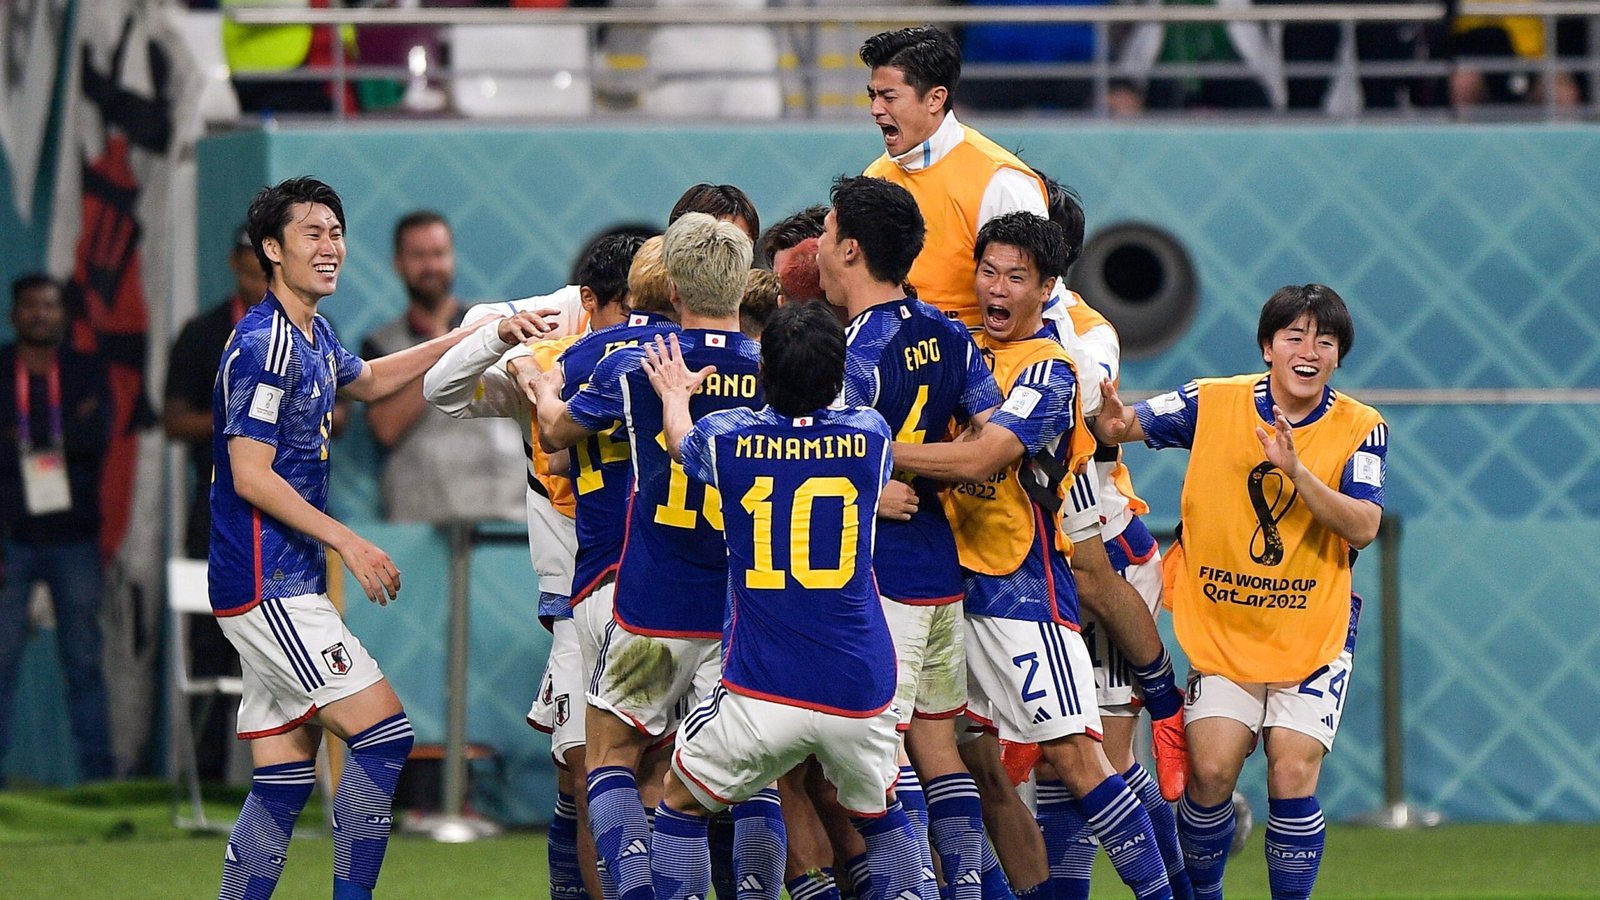 El seleccionado de Japón dio la sorpresa hoy al vencer por 2-1 a Alemania, tras ir en desventaja por 1-0 en la primera etapa, en un partido válido por la primera fecha del Grupo E